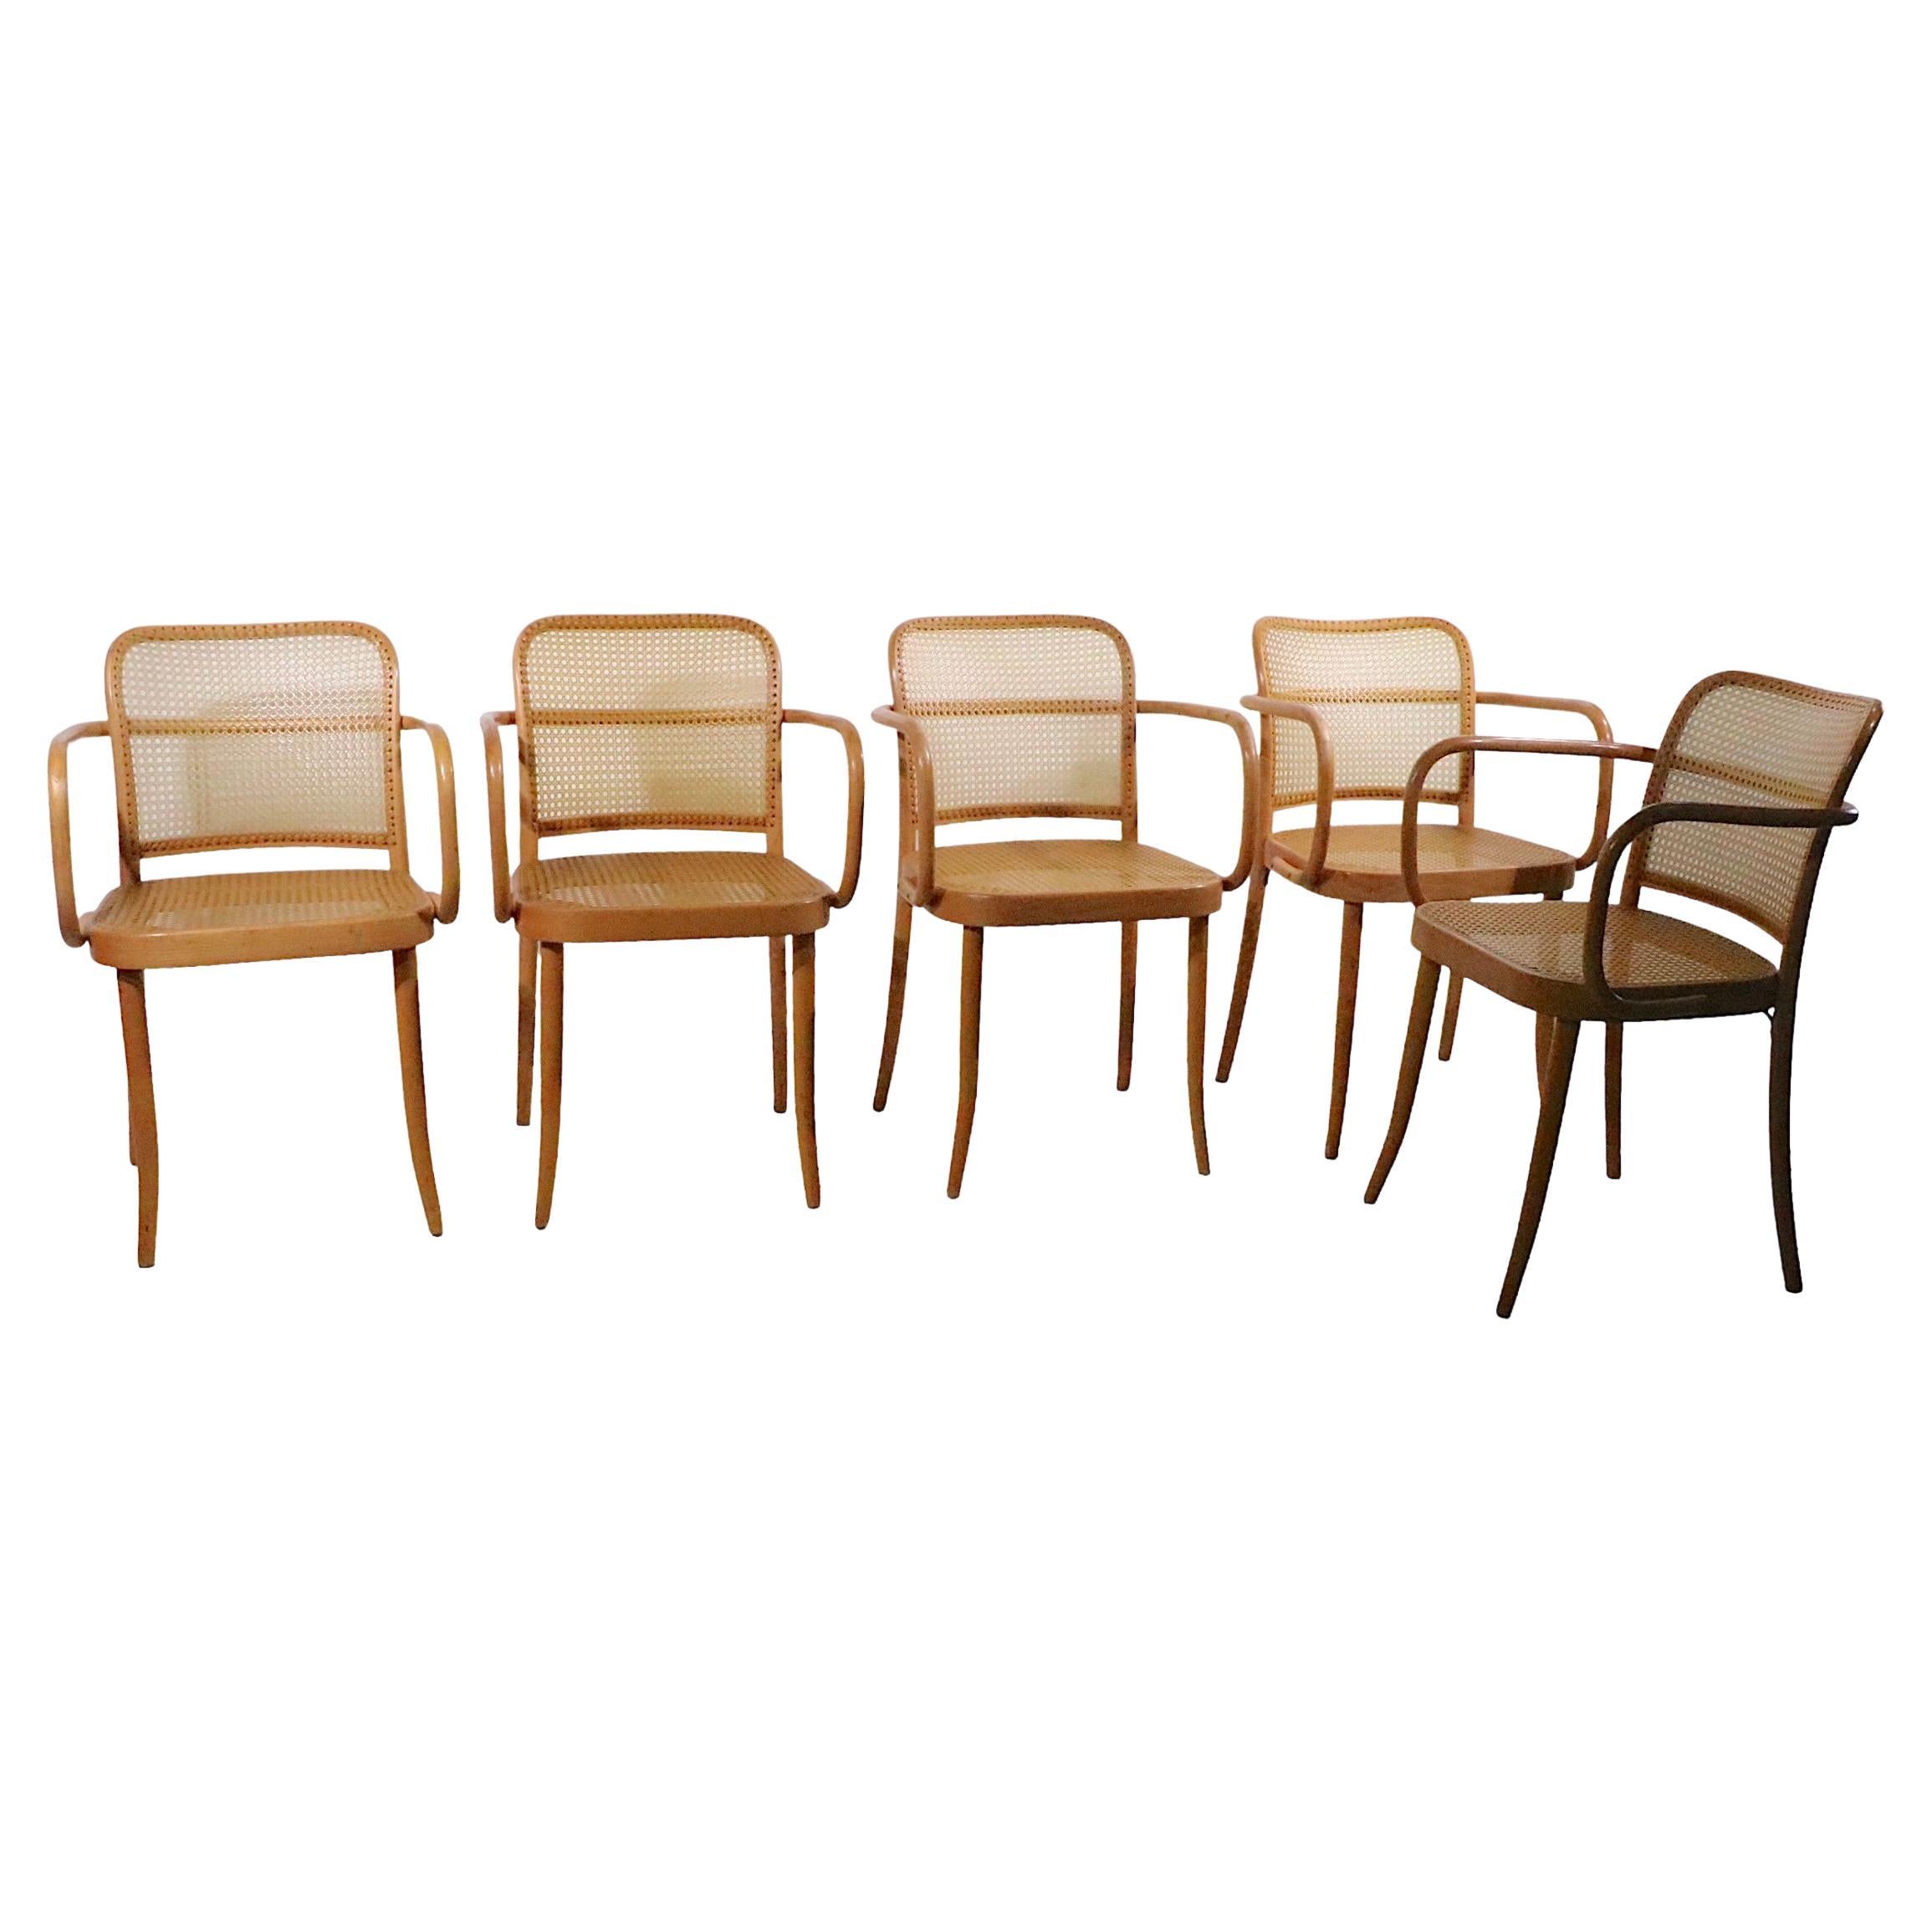 Ensemble de 5 chaises Josef Frank Prague fabriquées en Tchécoslovaquie, vers 1970